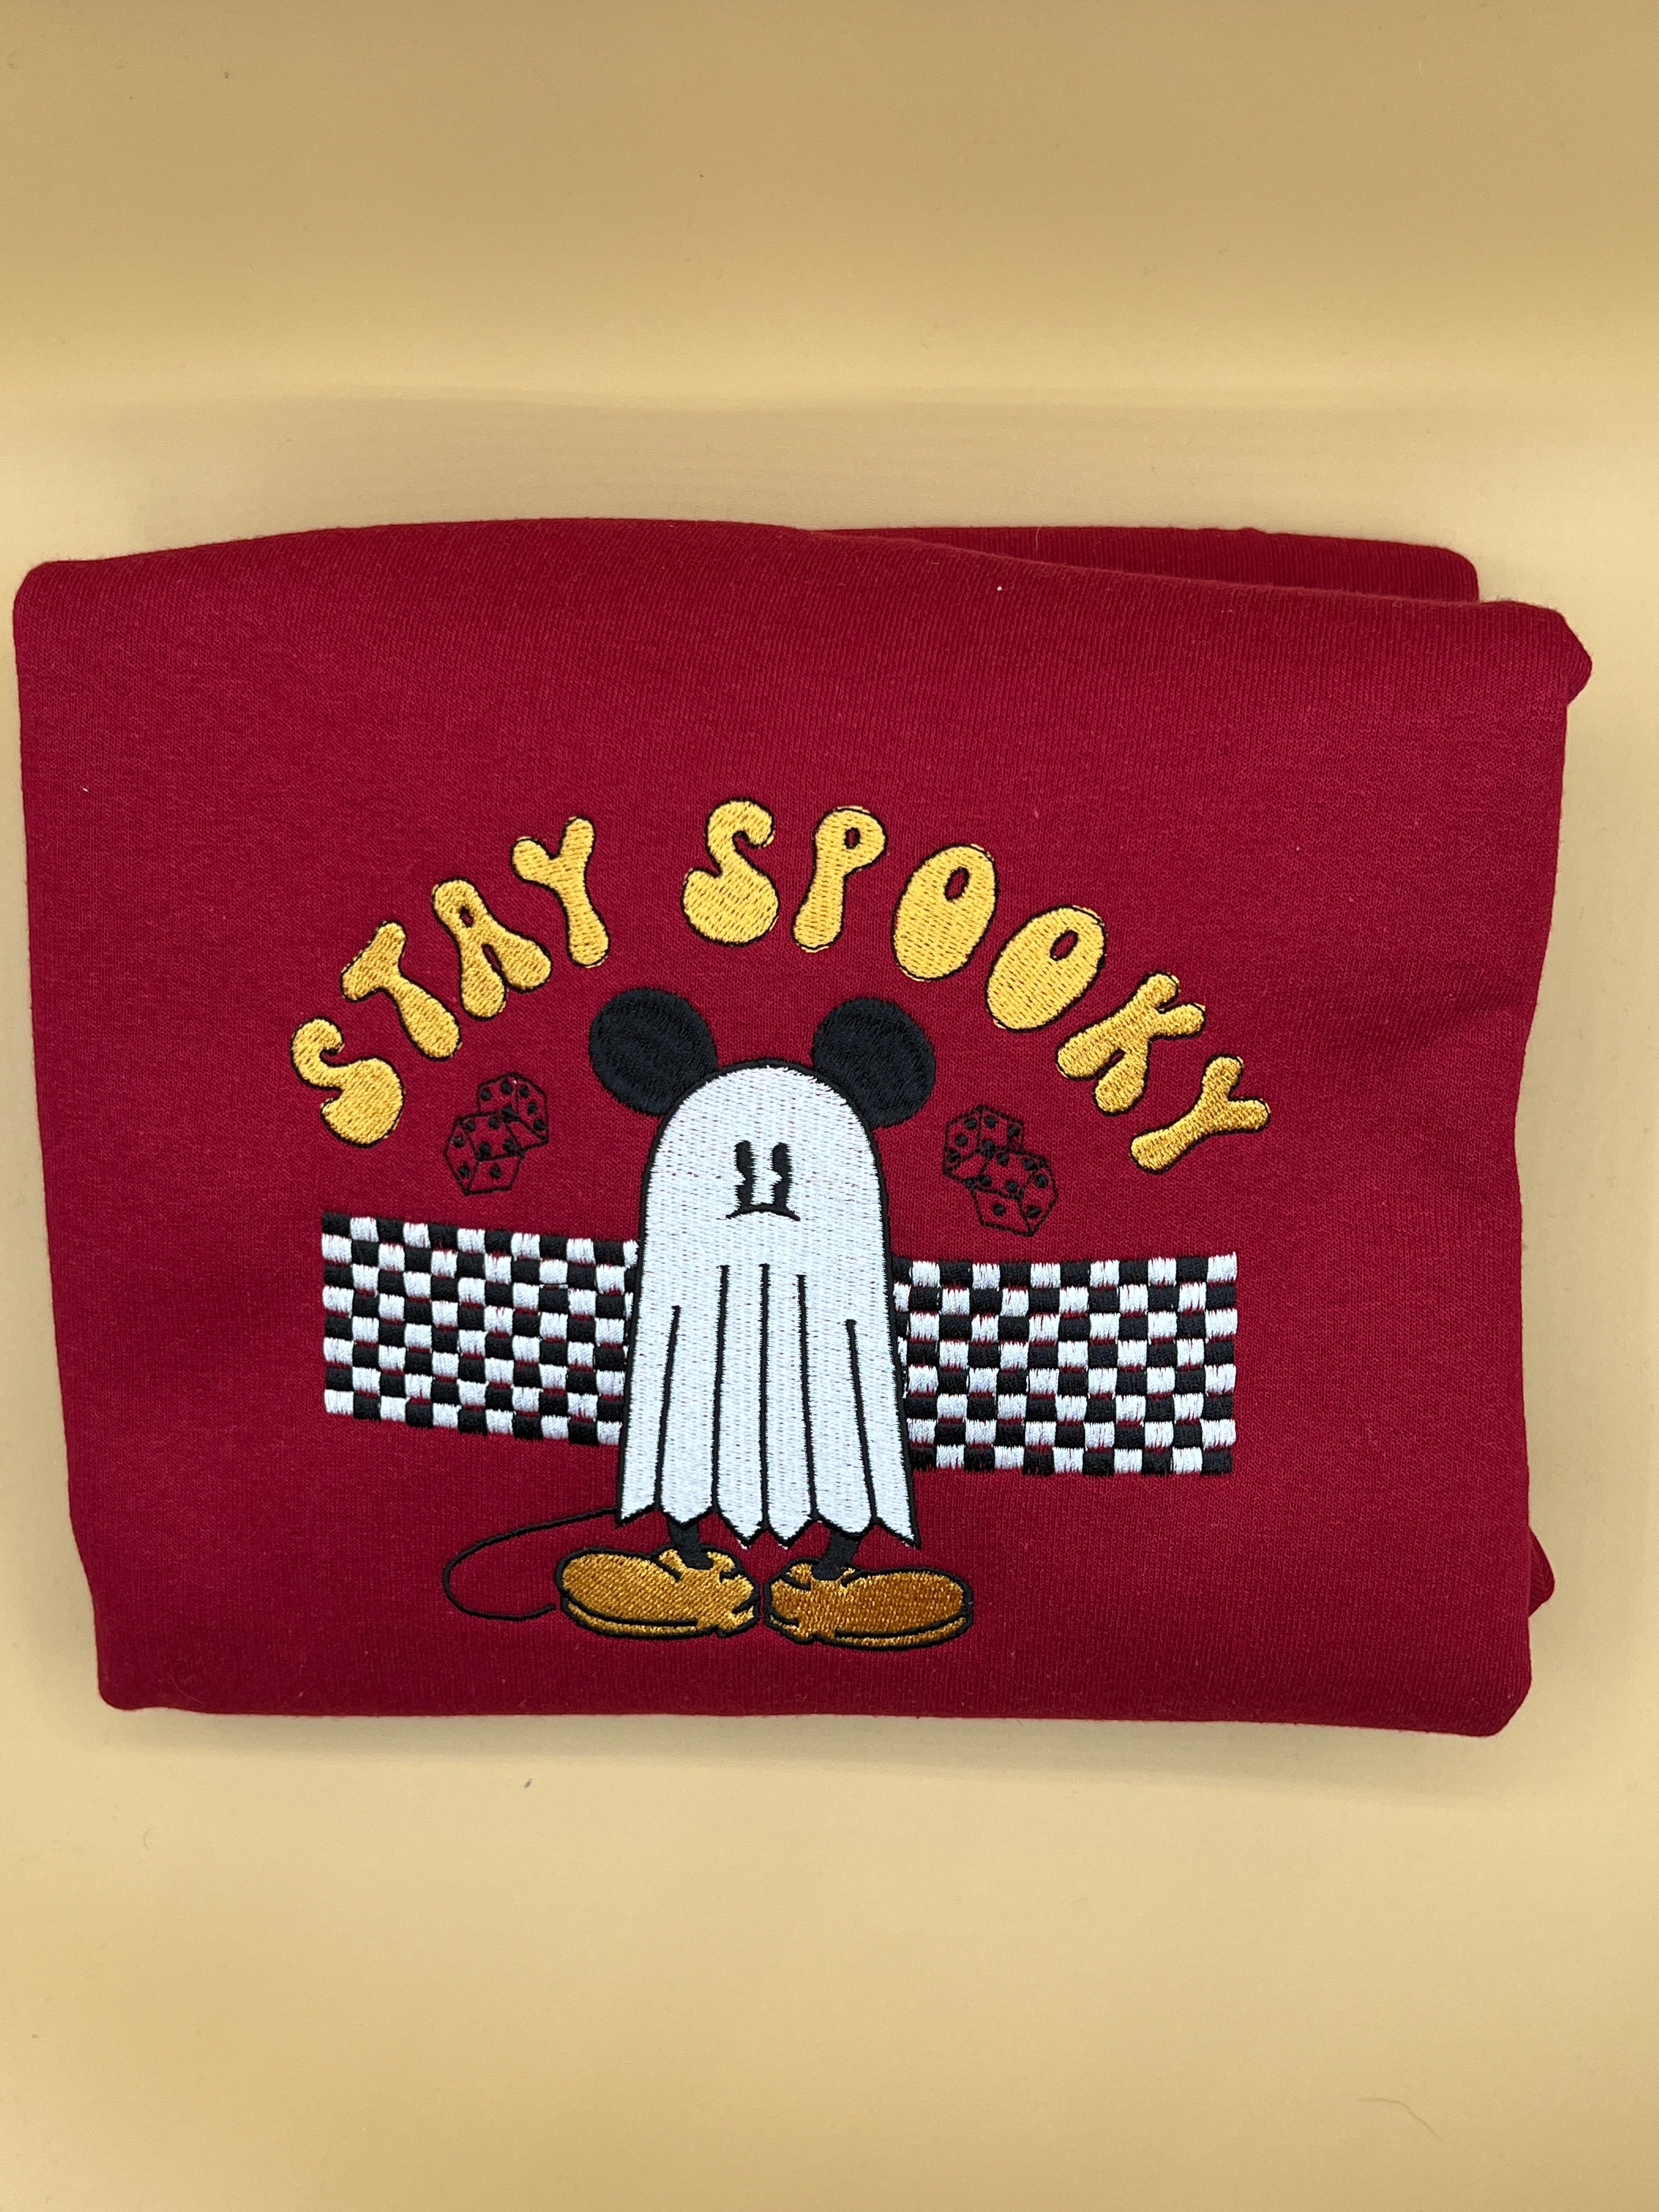 Stay Spooky Mickey.sweatshirt